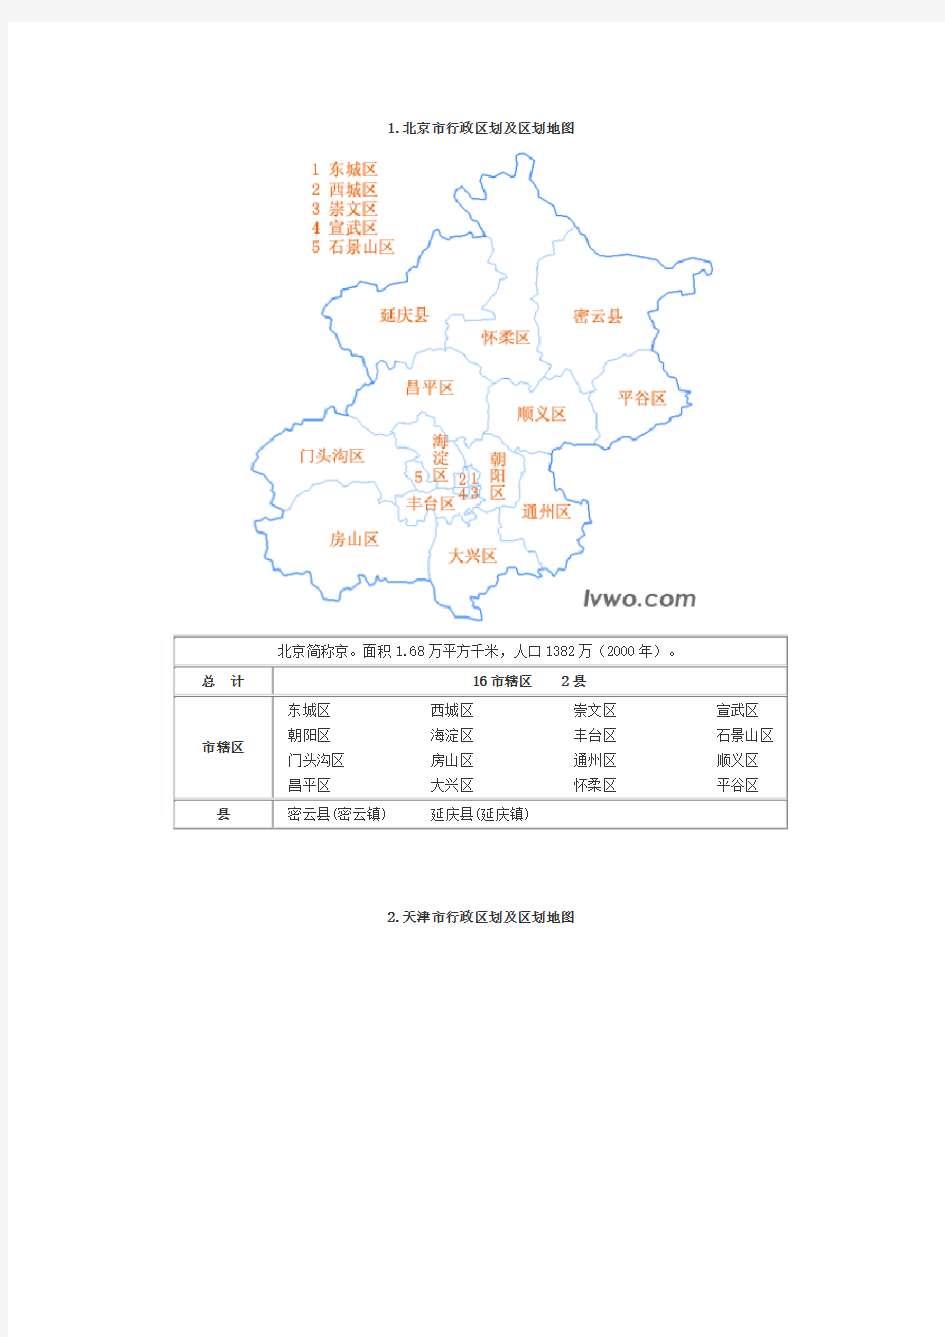 (推荐)中国分省行政区划及区划地图